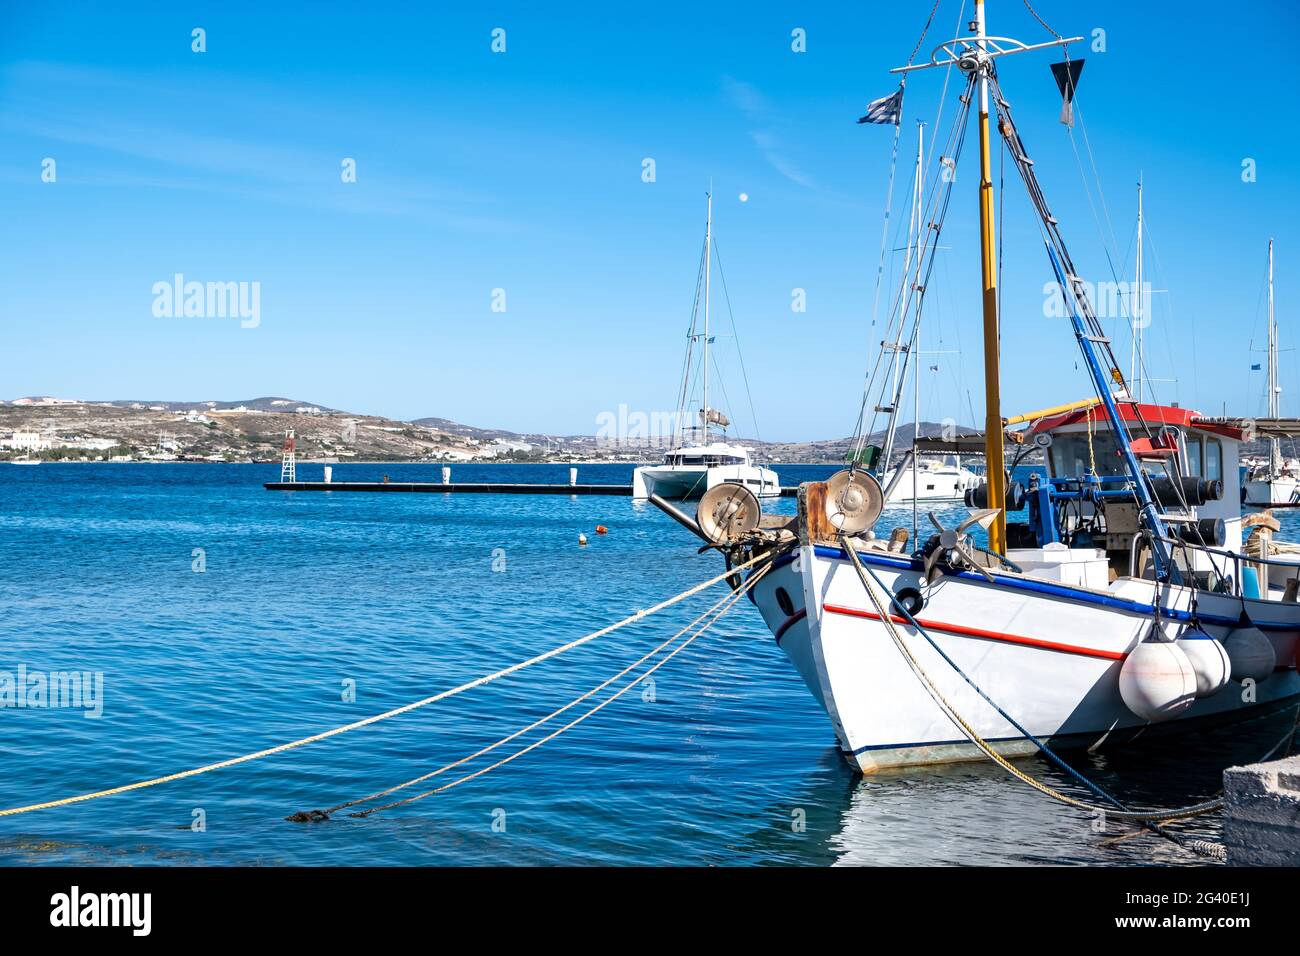 Barca da pesca colorata ormeggiata al porto dell'isola di Milos, Cicladi, Grecia. Vista tradizionale dell'antico chioseup di vasi in legno. Giorno di sole, cielo blu chiaro. Spazio, c. Foto Stock